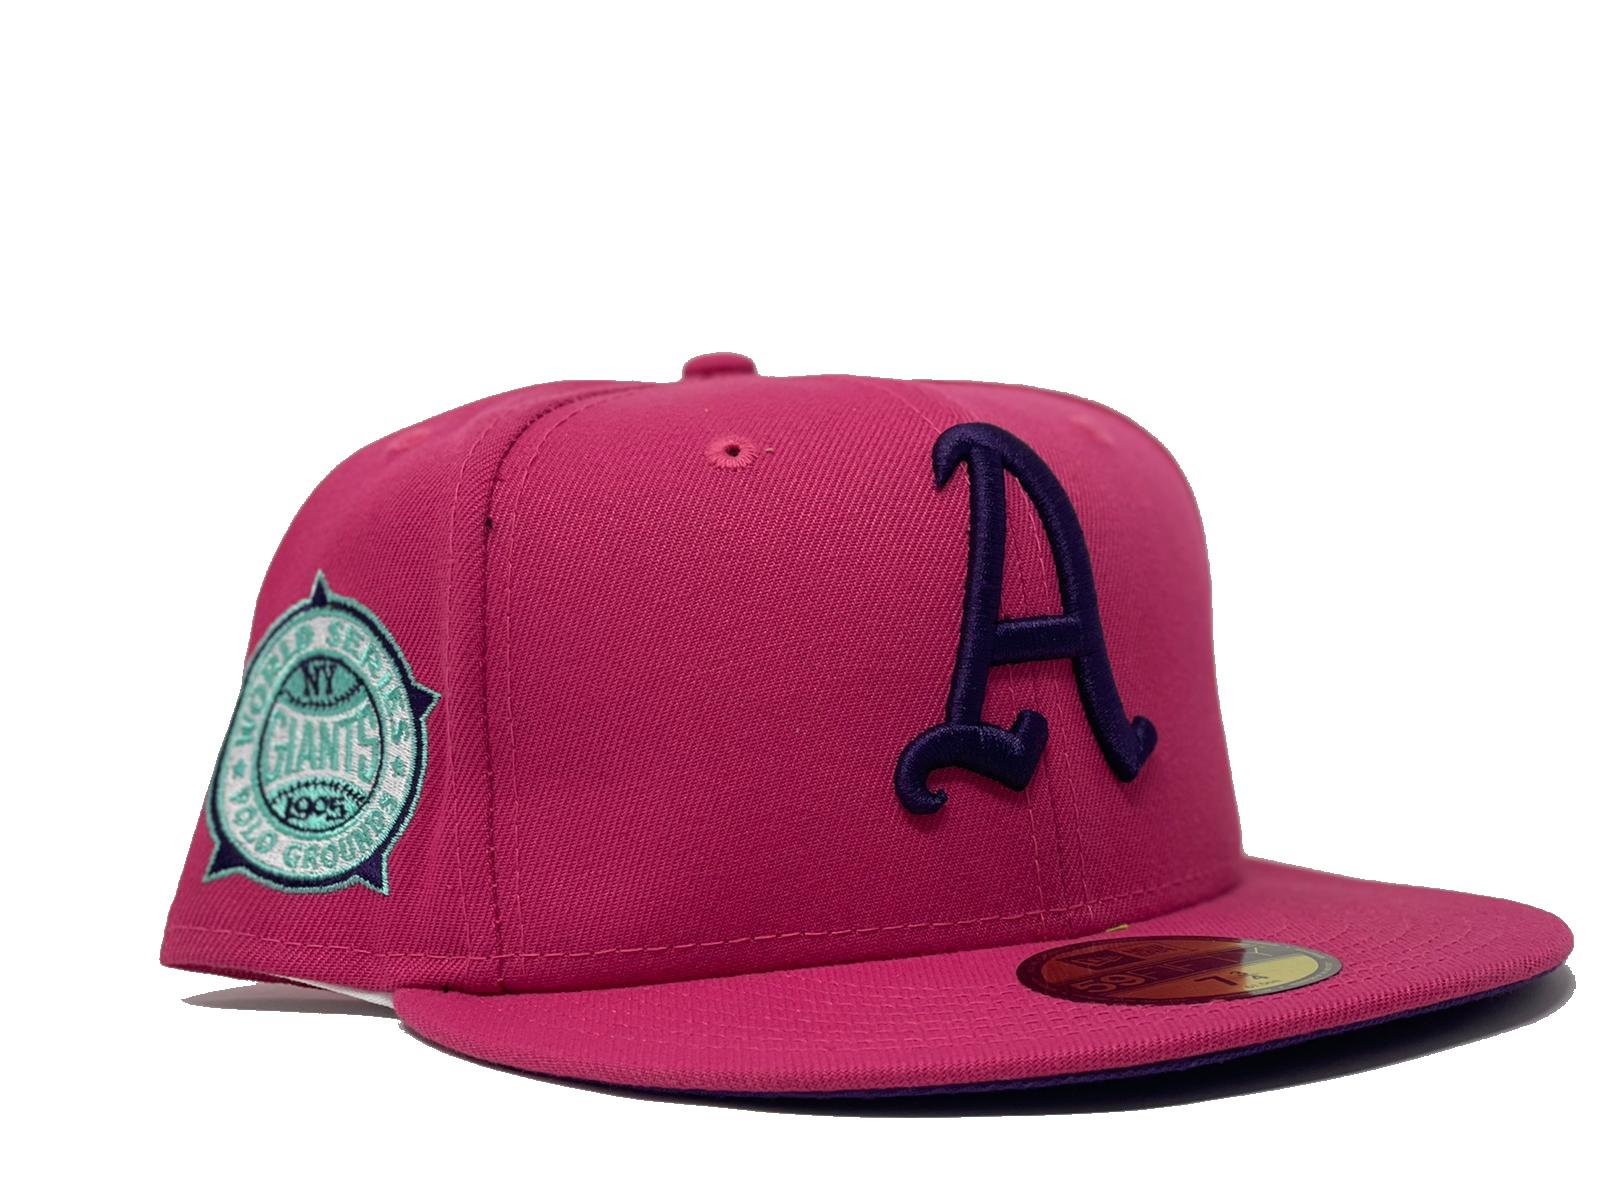 Philadelphia Phillies fitted hat – AAS ATHLETICS